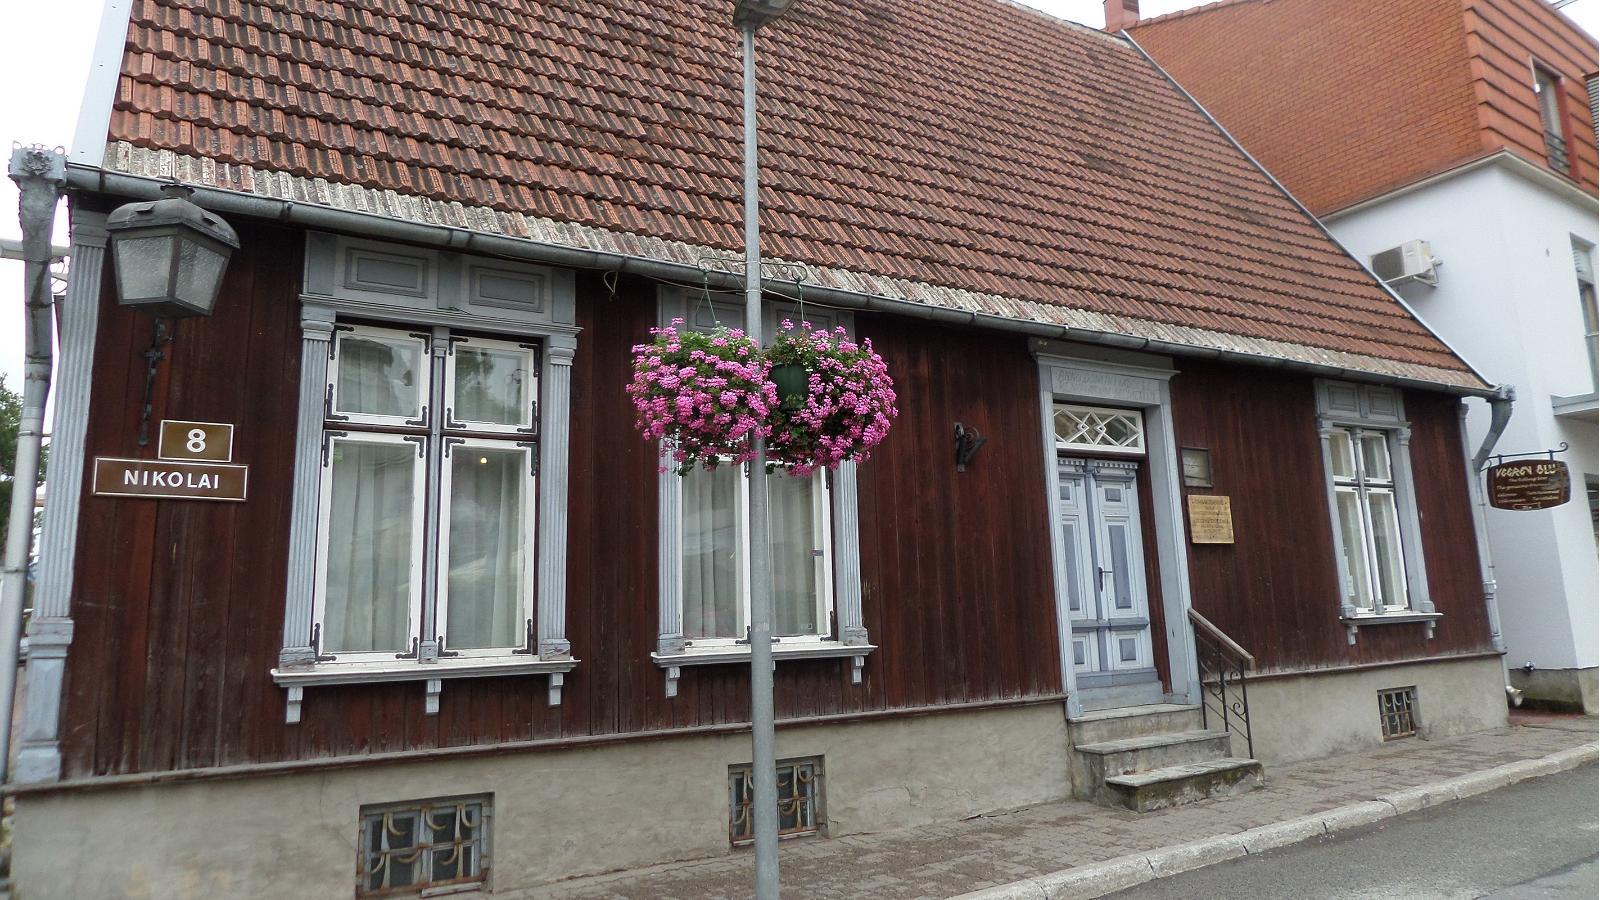 Pärnu Citizen’s House